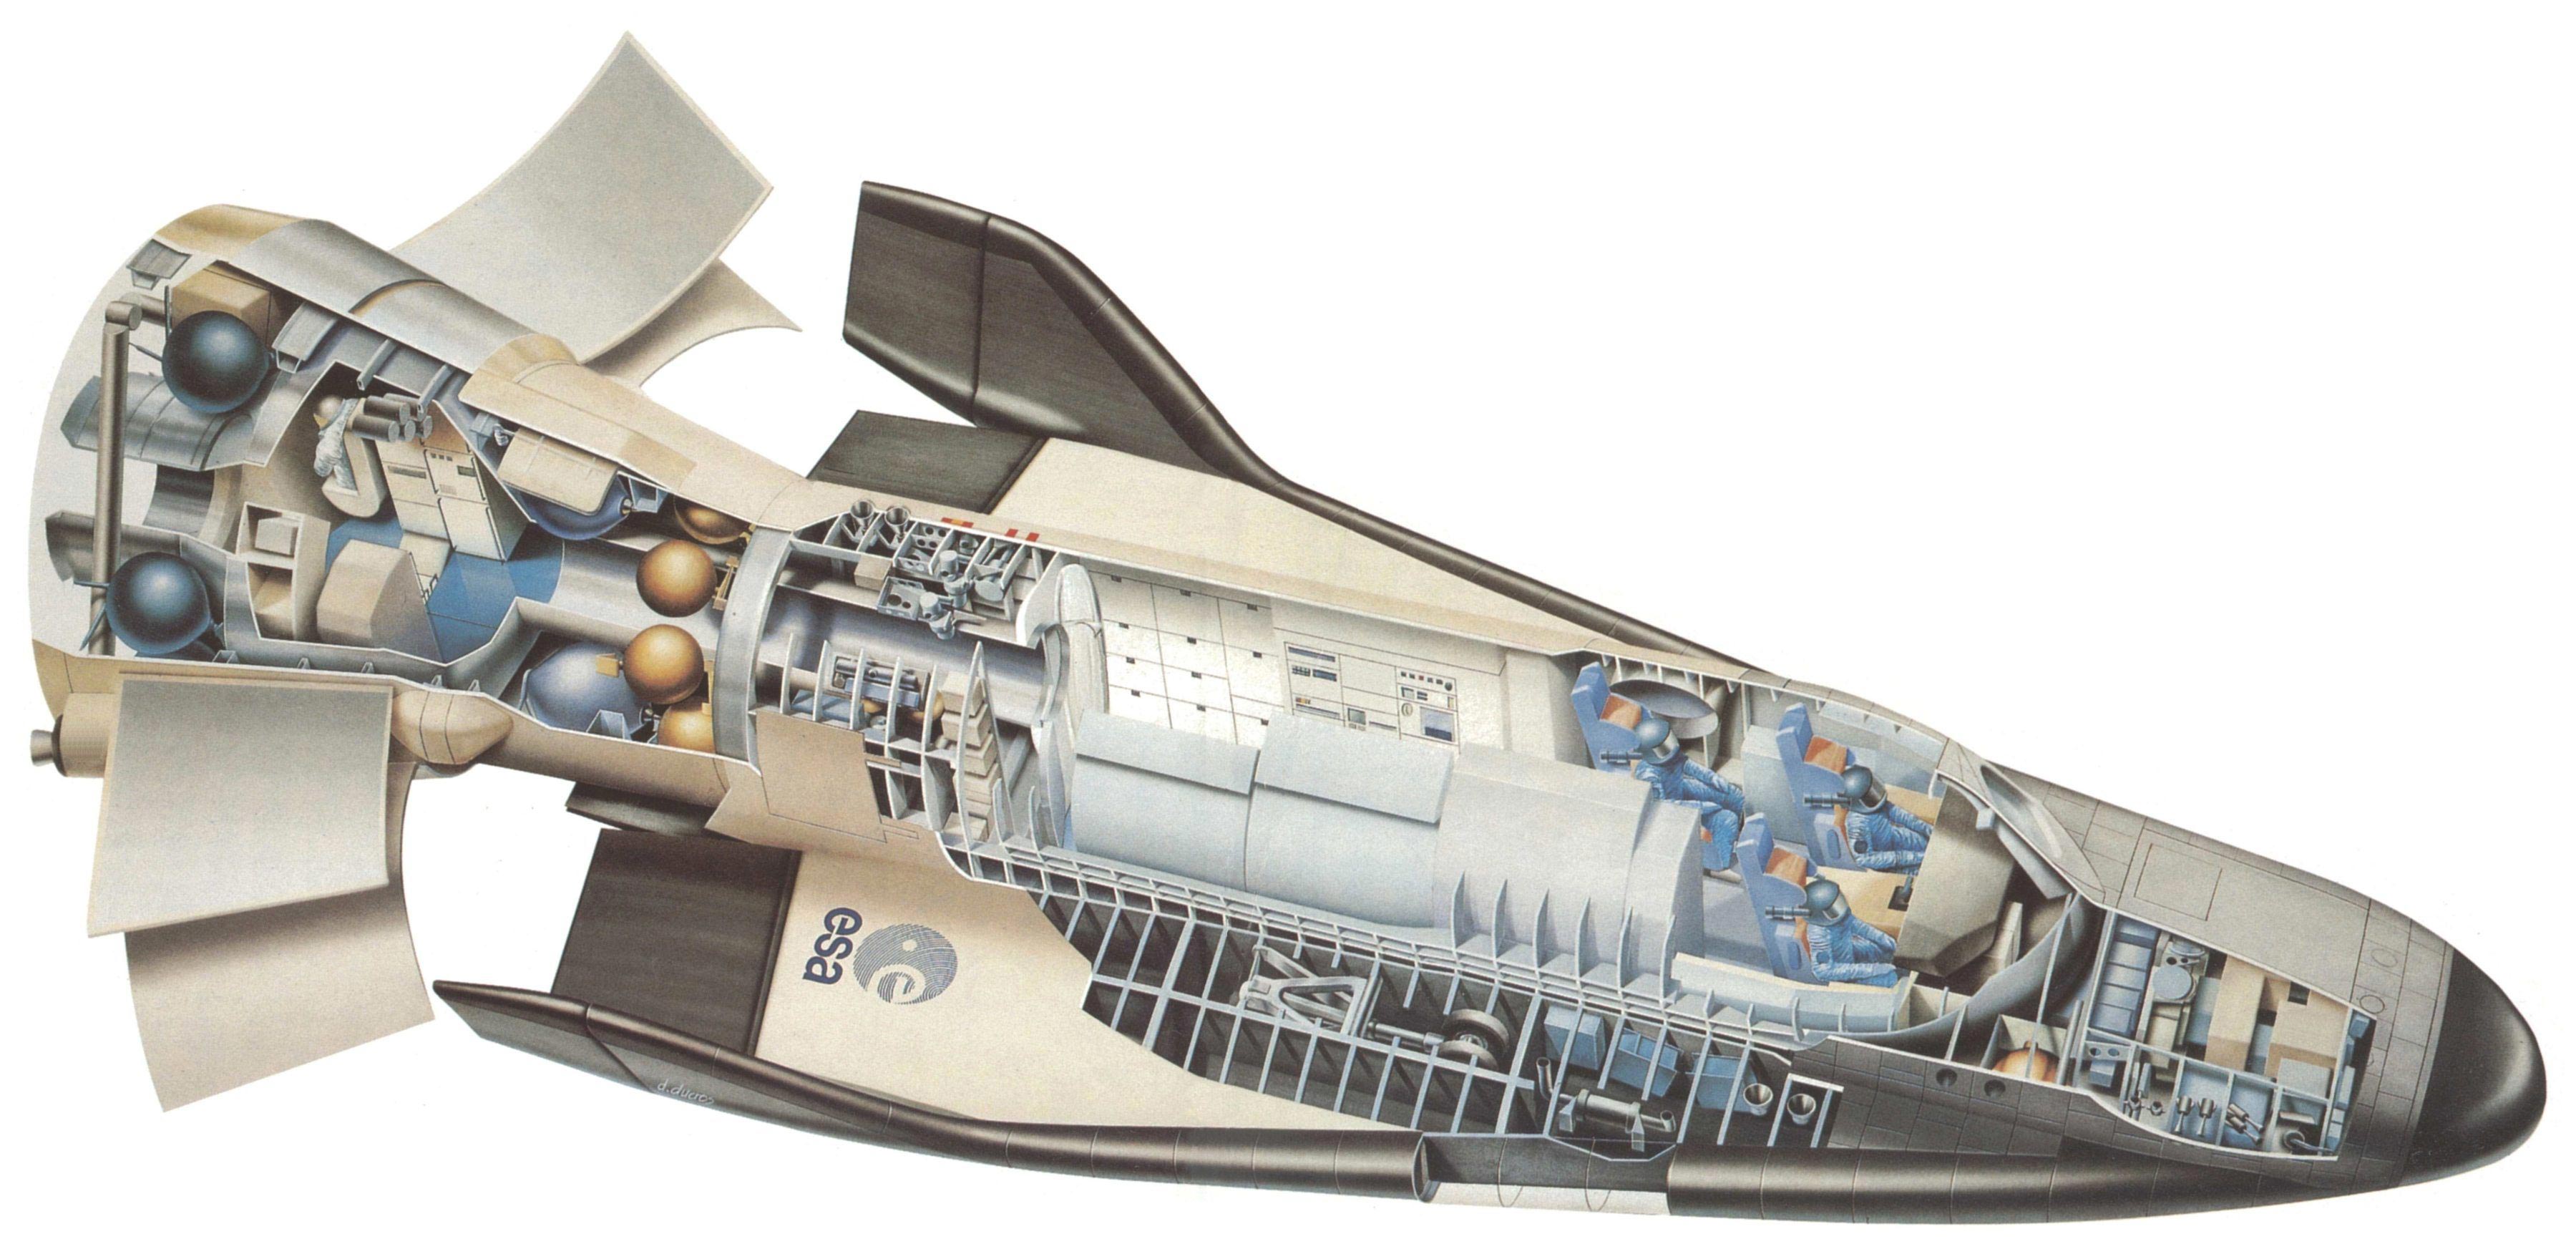 Hermes spaceplane cutaway